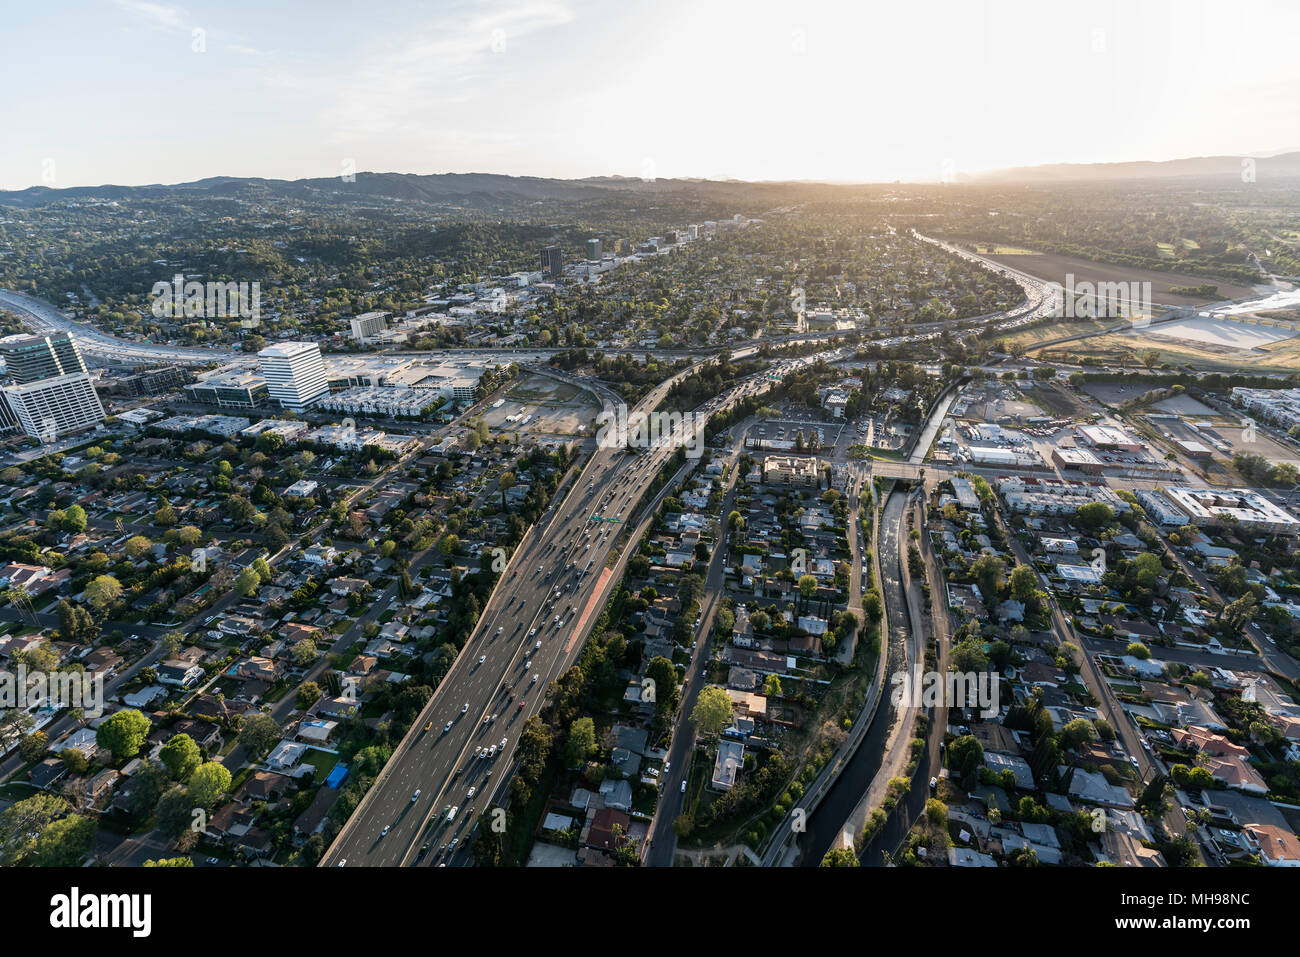 Am späten Nachmittag Luftaufnahme von Ventura 101 Freeway im San Fernando Valley Gegend von Los Angeles, Kalifornien. Stockfoto